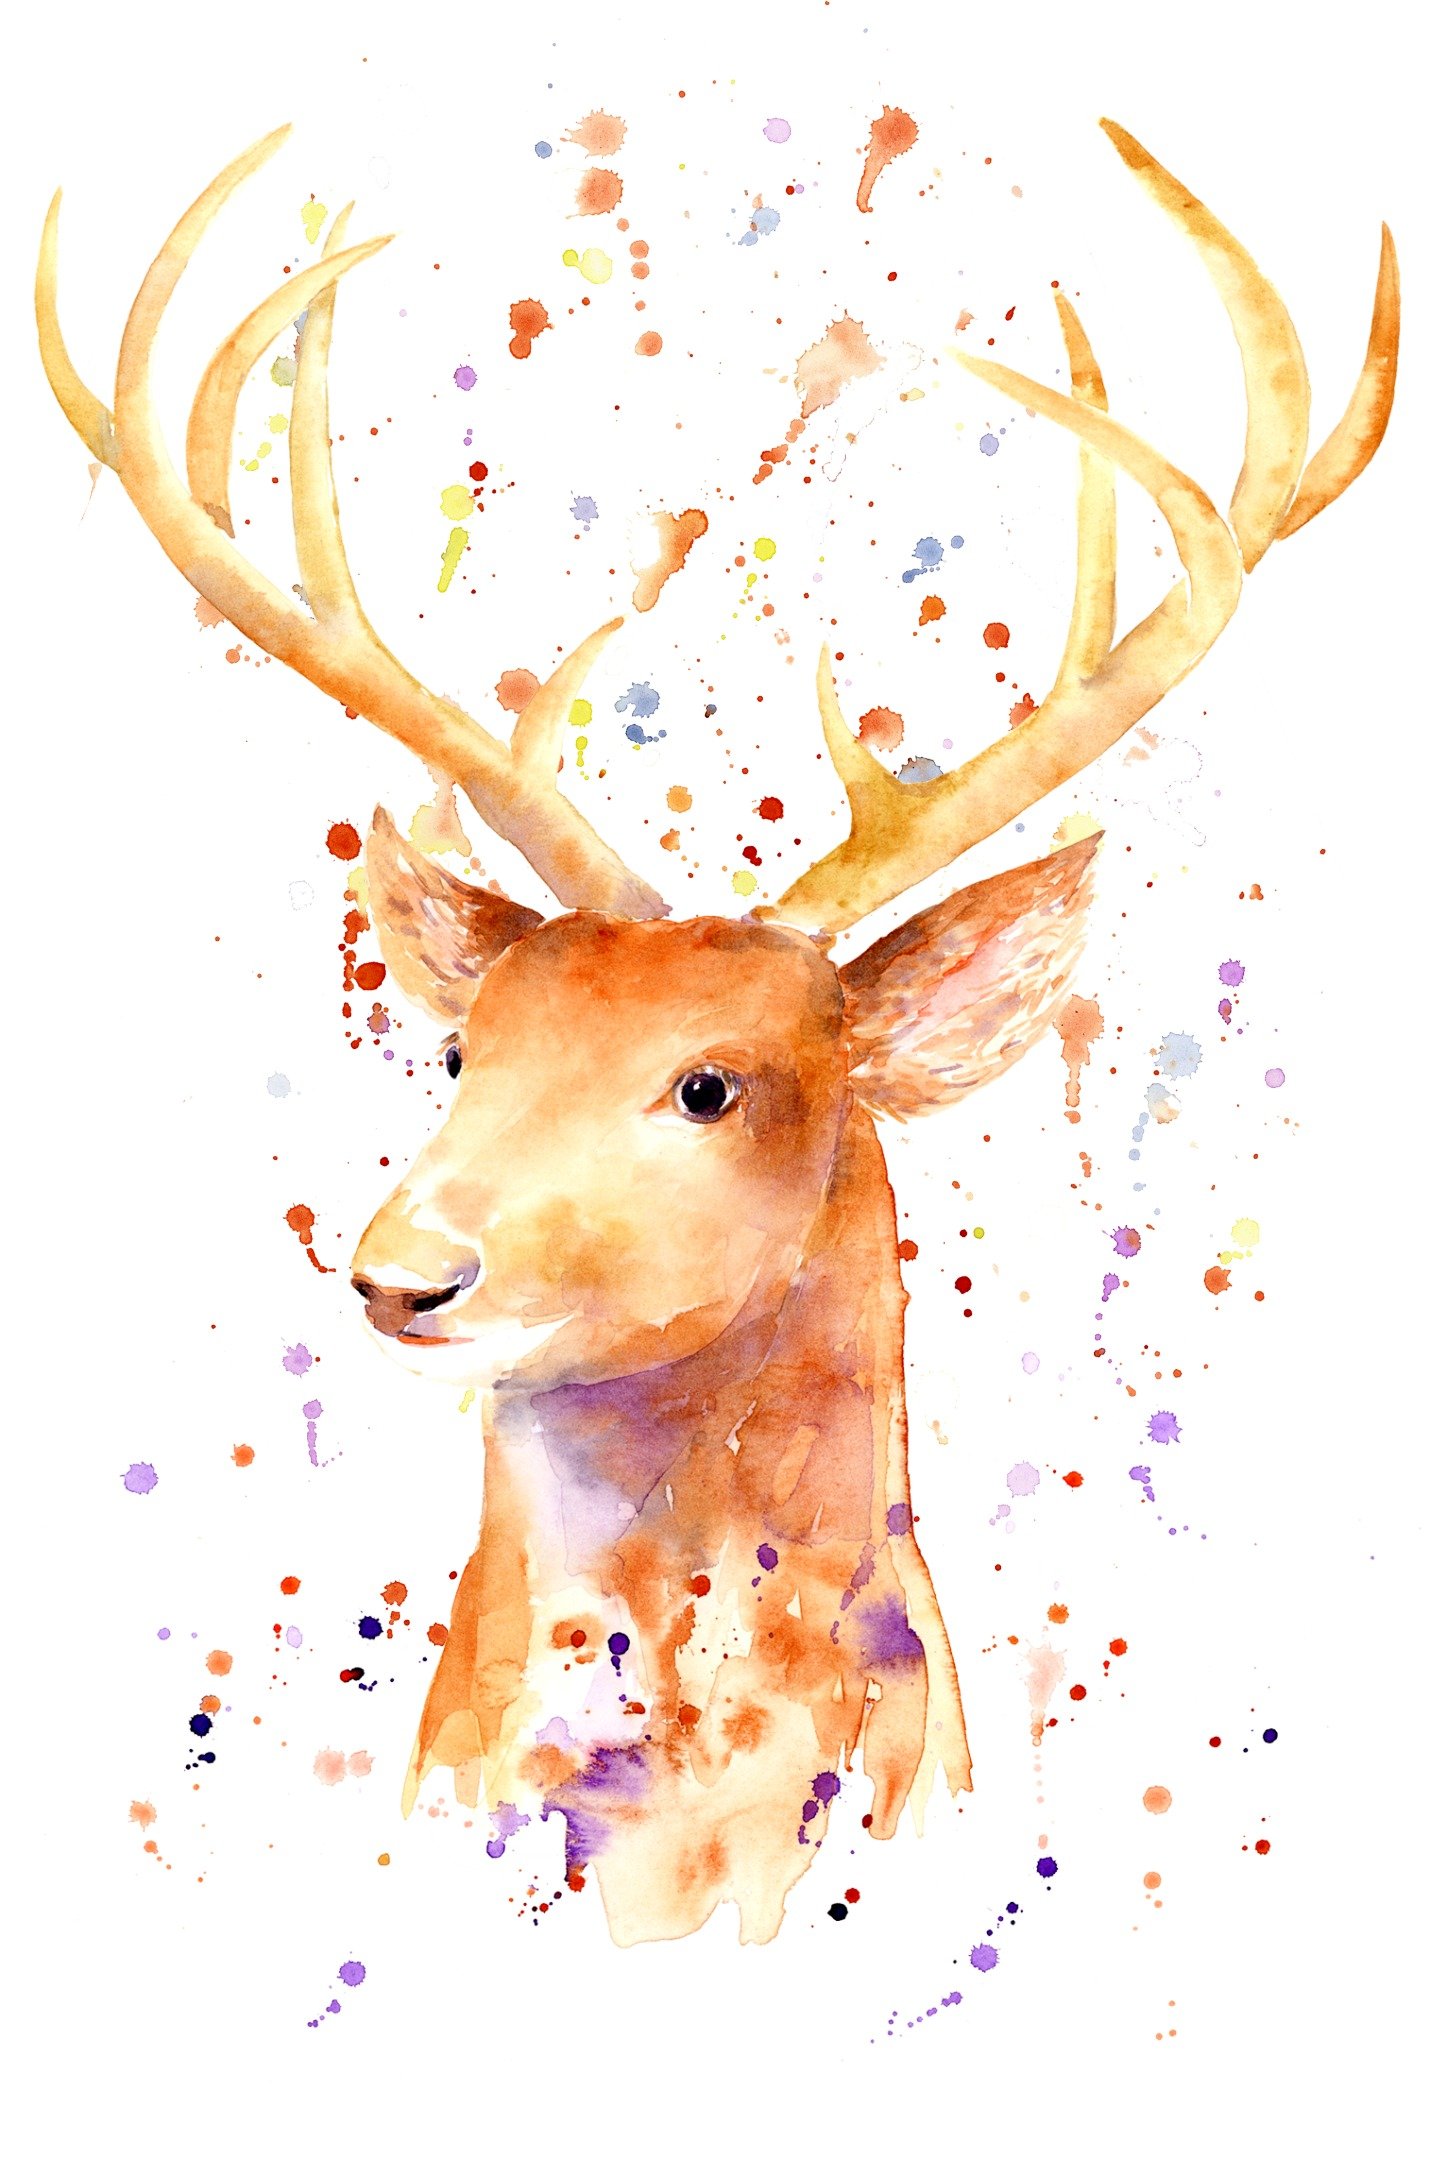 Oh my Deer, it's watercolor everywhere!